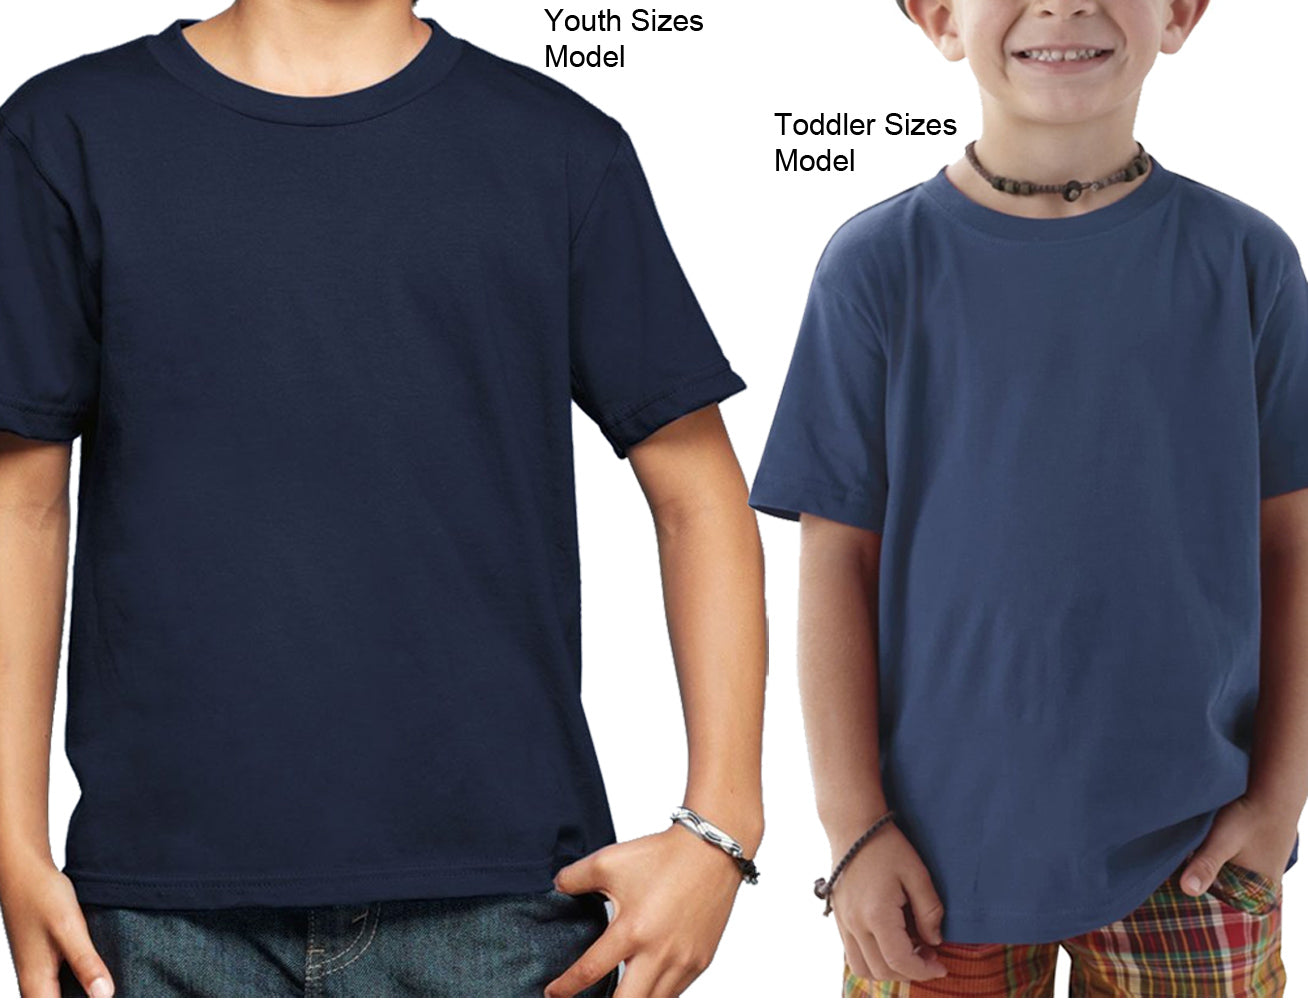 Boy's St Louis 314 Area Code T-Shirt